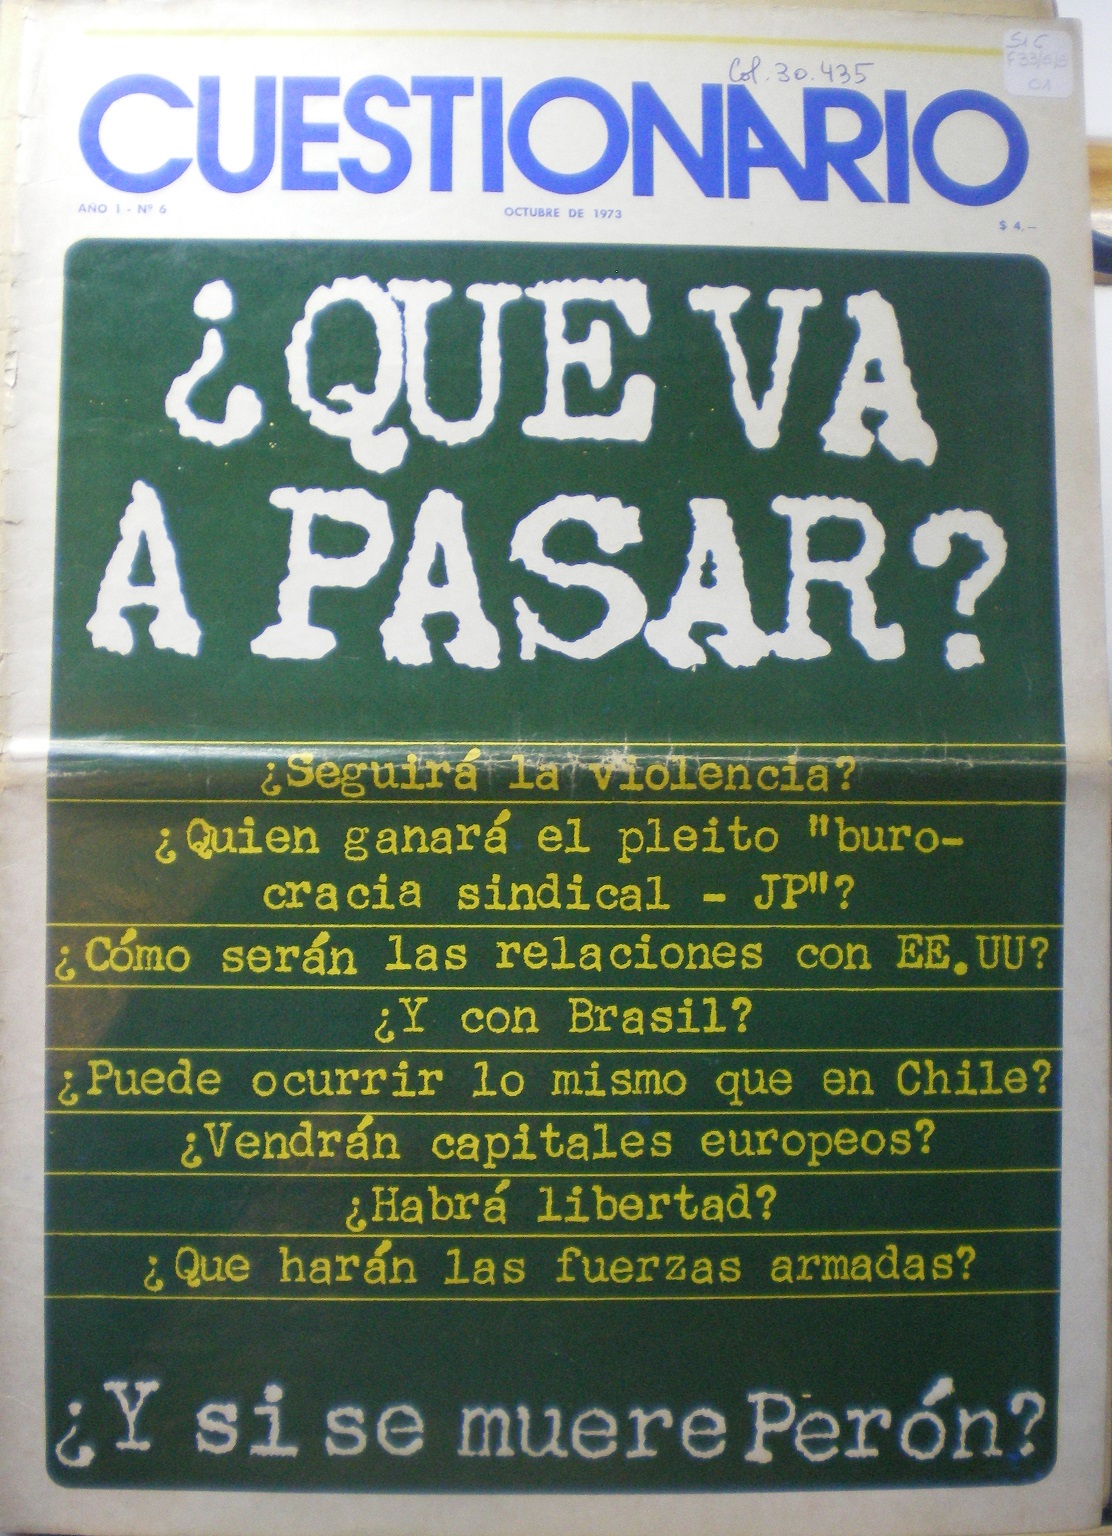 Cuestionario realiza la pregunta tabú:
“¿Y si se muere Perón?” (octubre de 1973)